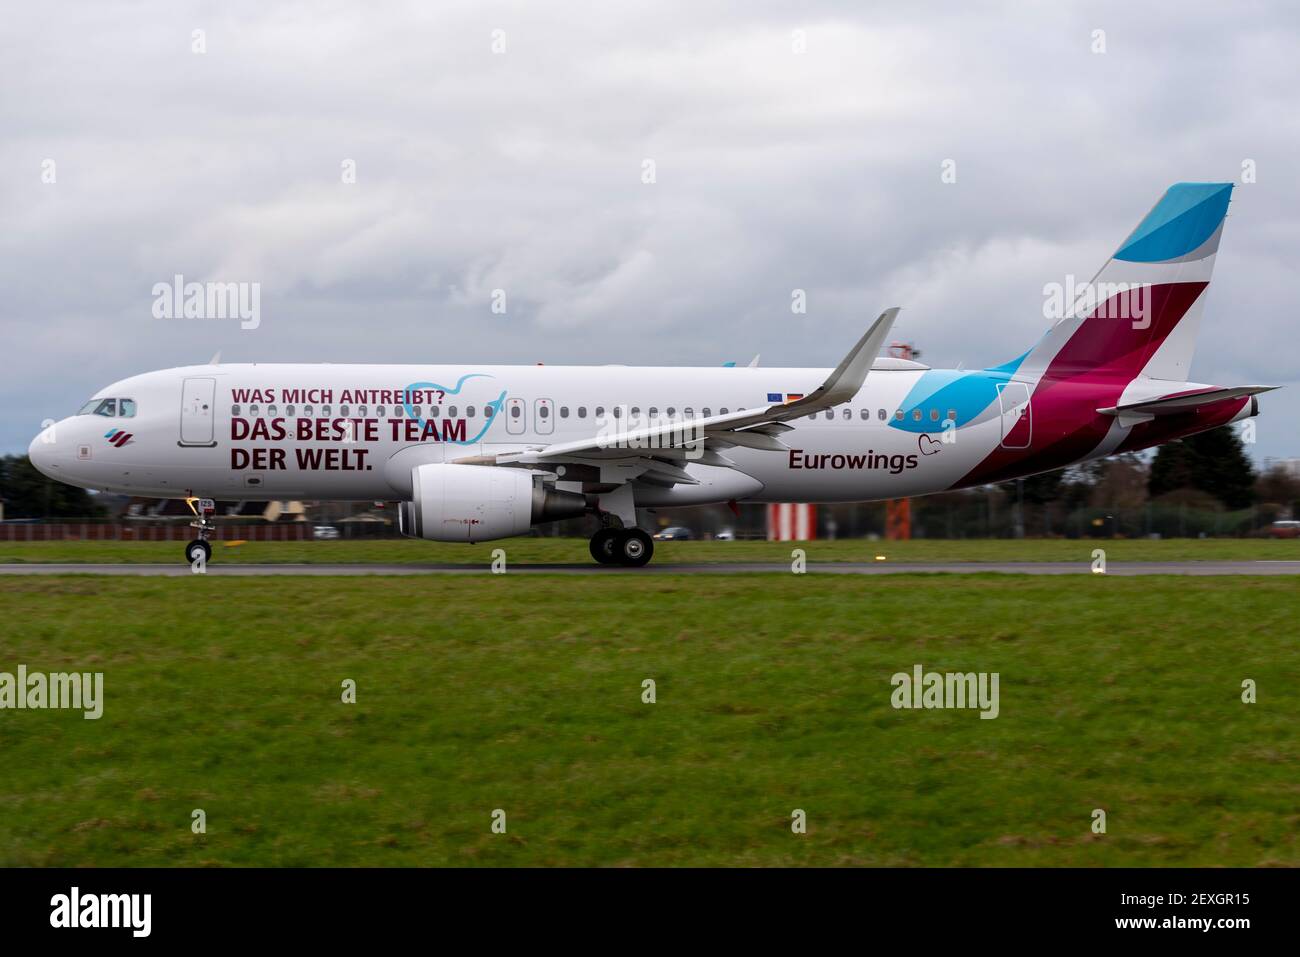 La compagnie aérienne Eurowings a ajouté un message à l'un de leurs Les avions de ligne Airbus A320 remercient leurs employés pour leurs efforts Pendant la pandémie de COVID 19 Banque D'Images